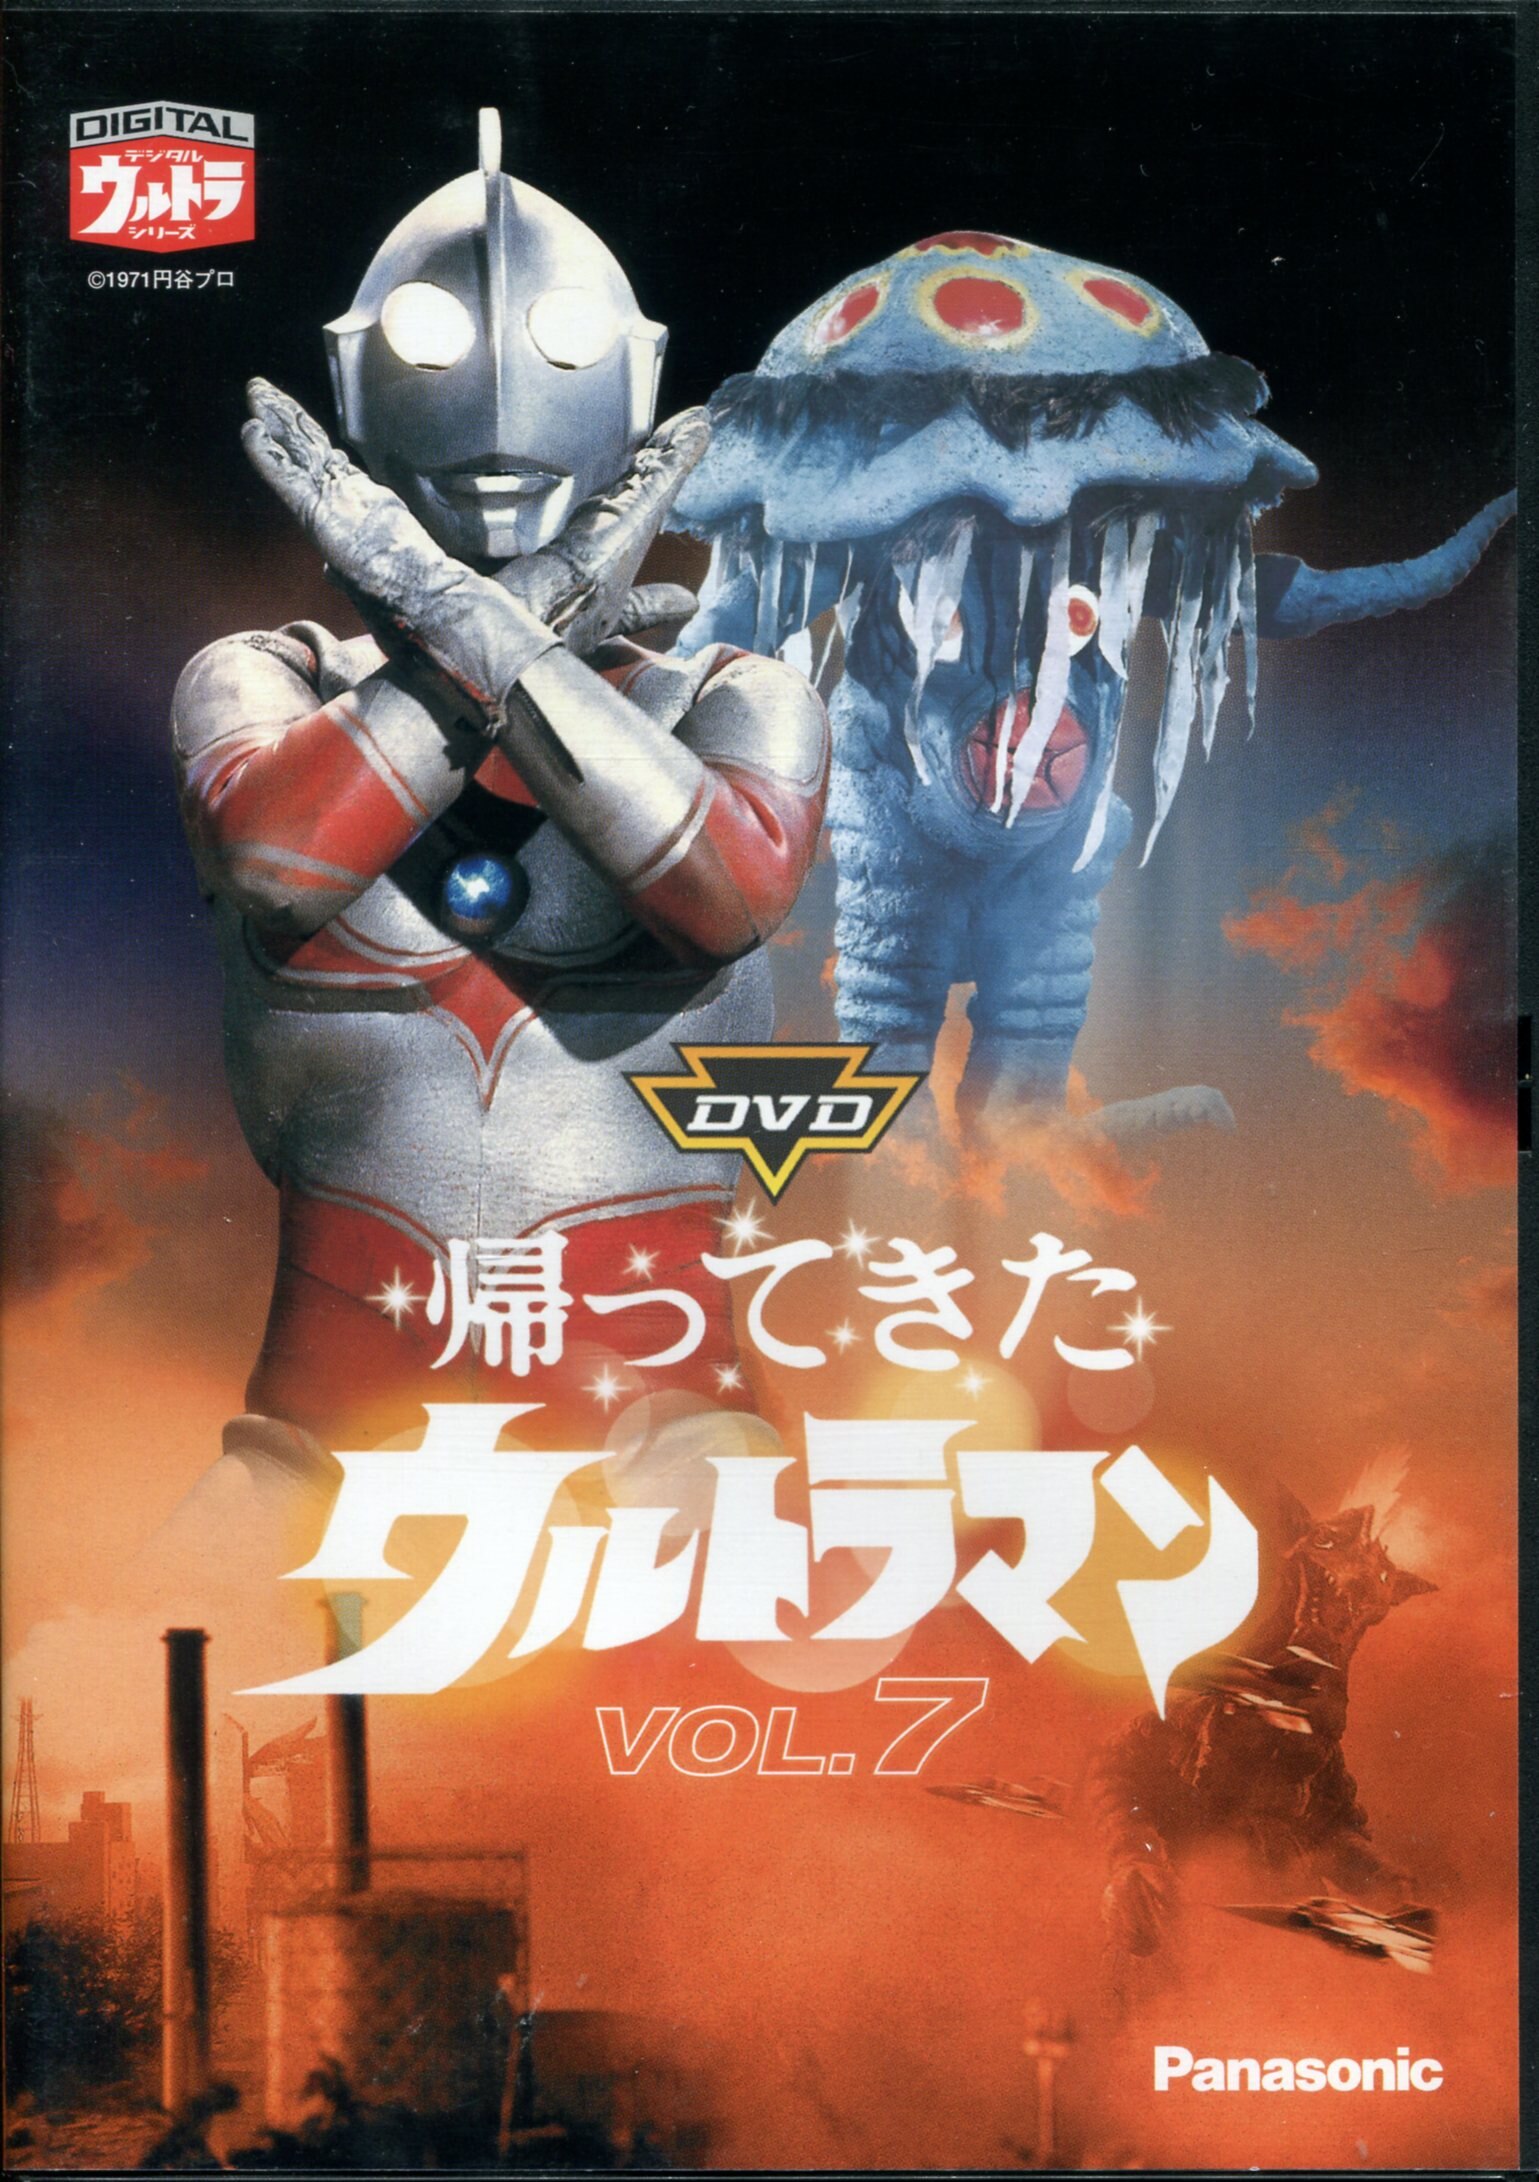 DVD DVD帰ってきたウルトラマン Vol.9 円谷プロ デジタルウルトラ 